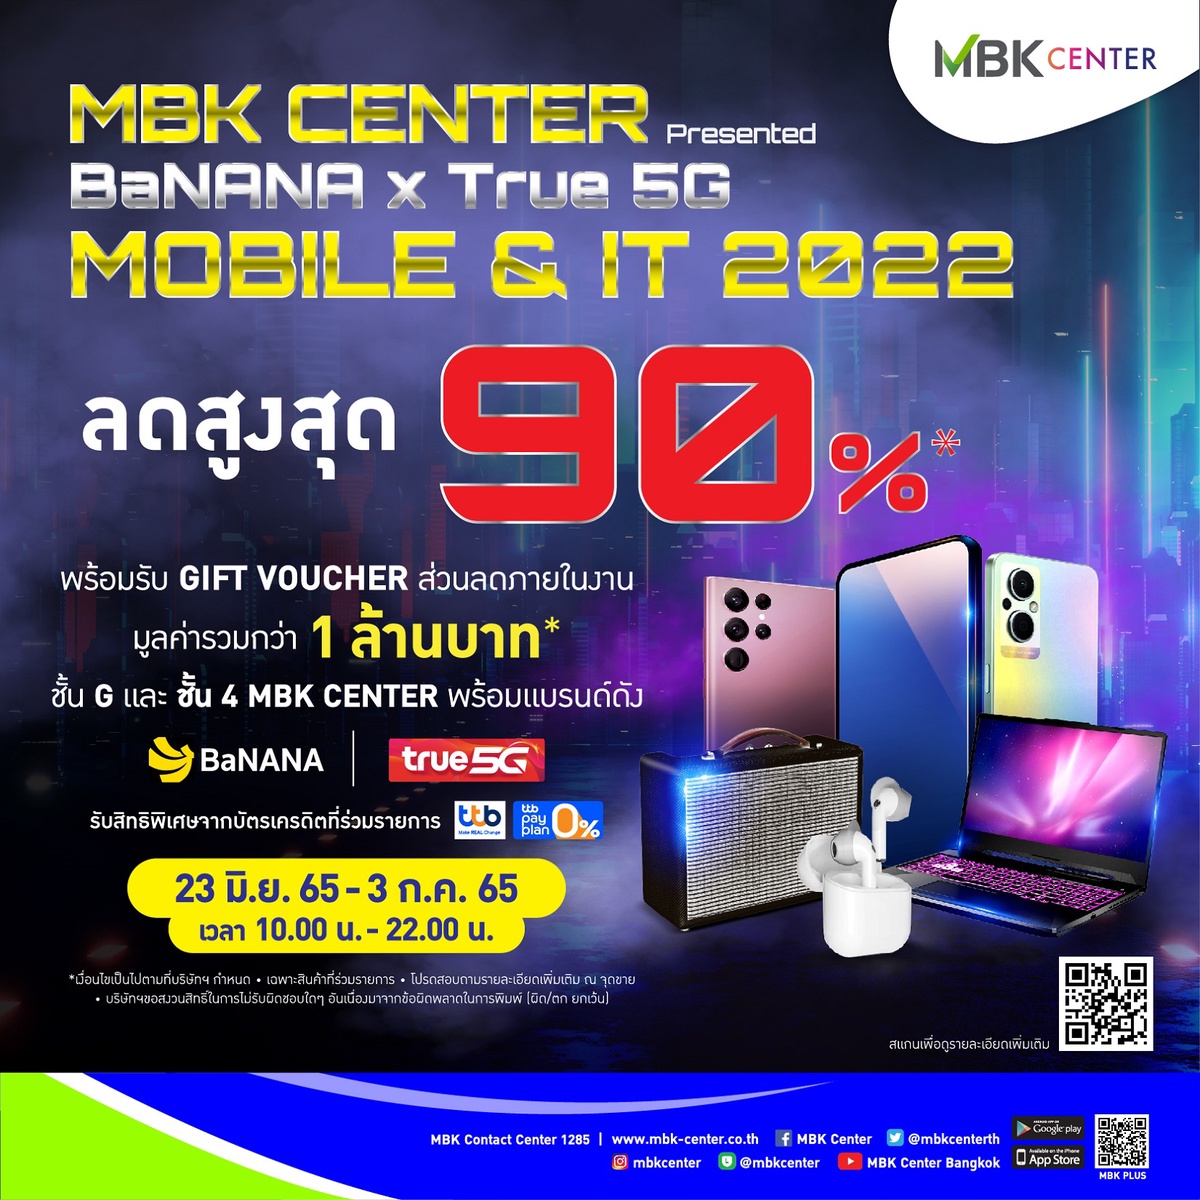 เอ็ม บี เค เซ็นเตอร์ จัดงาน MBK CENTER Presented BaNANA x True 5G MOBILE IT 2022